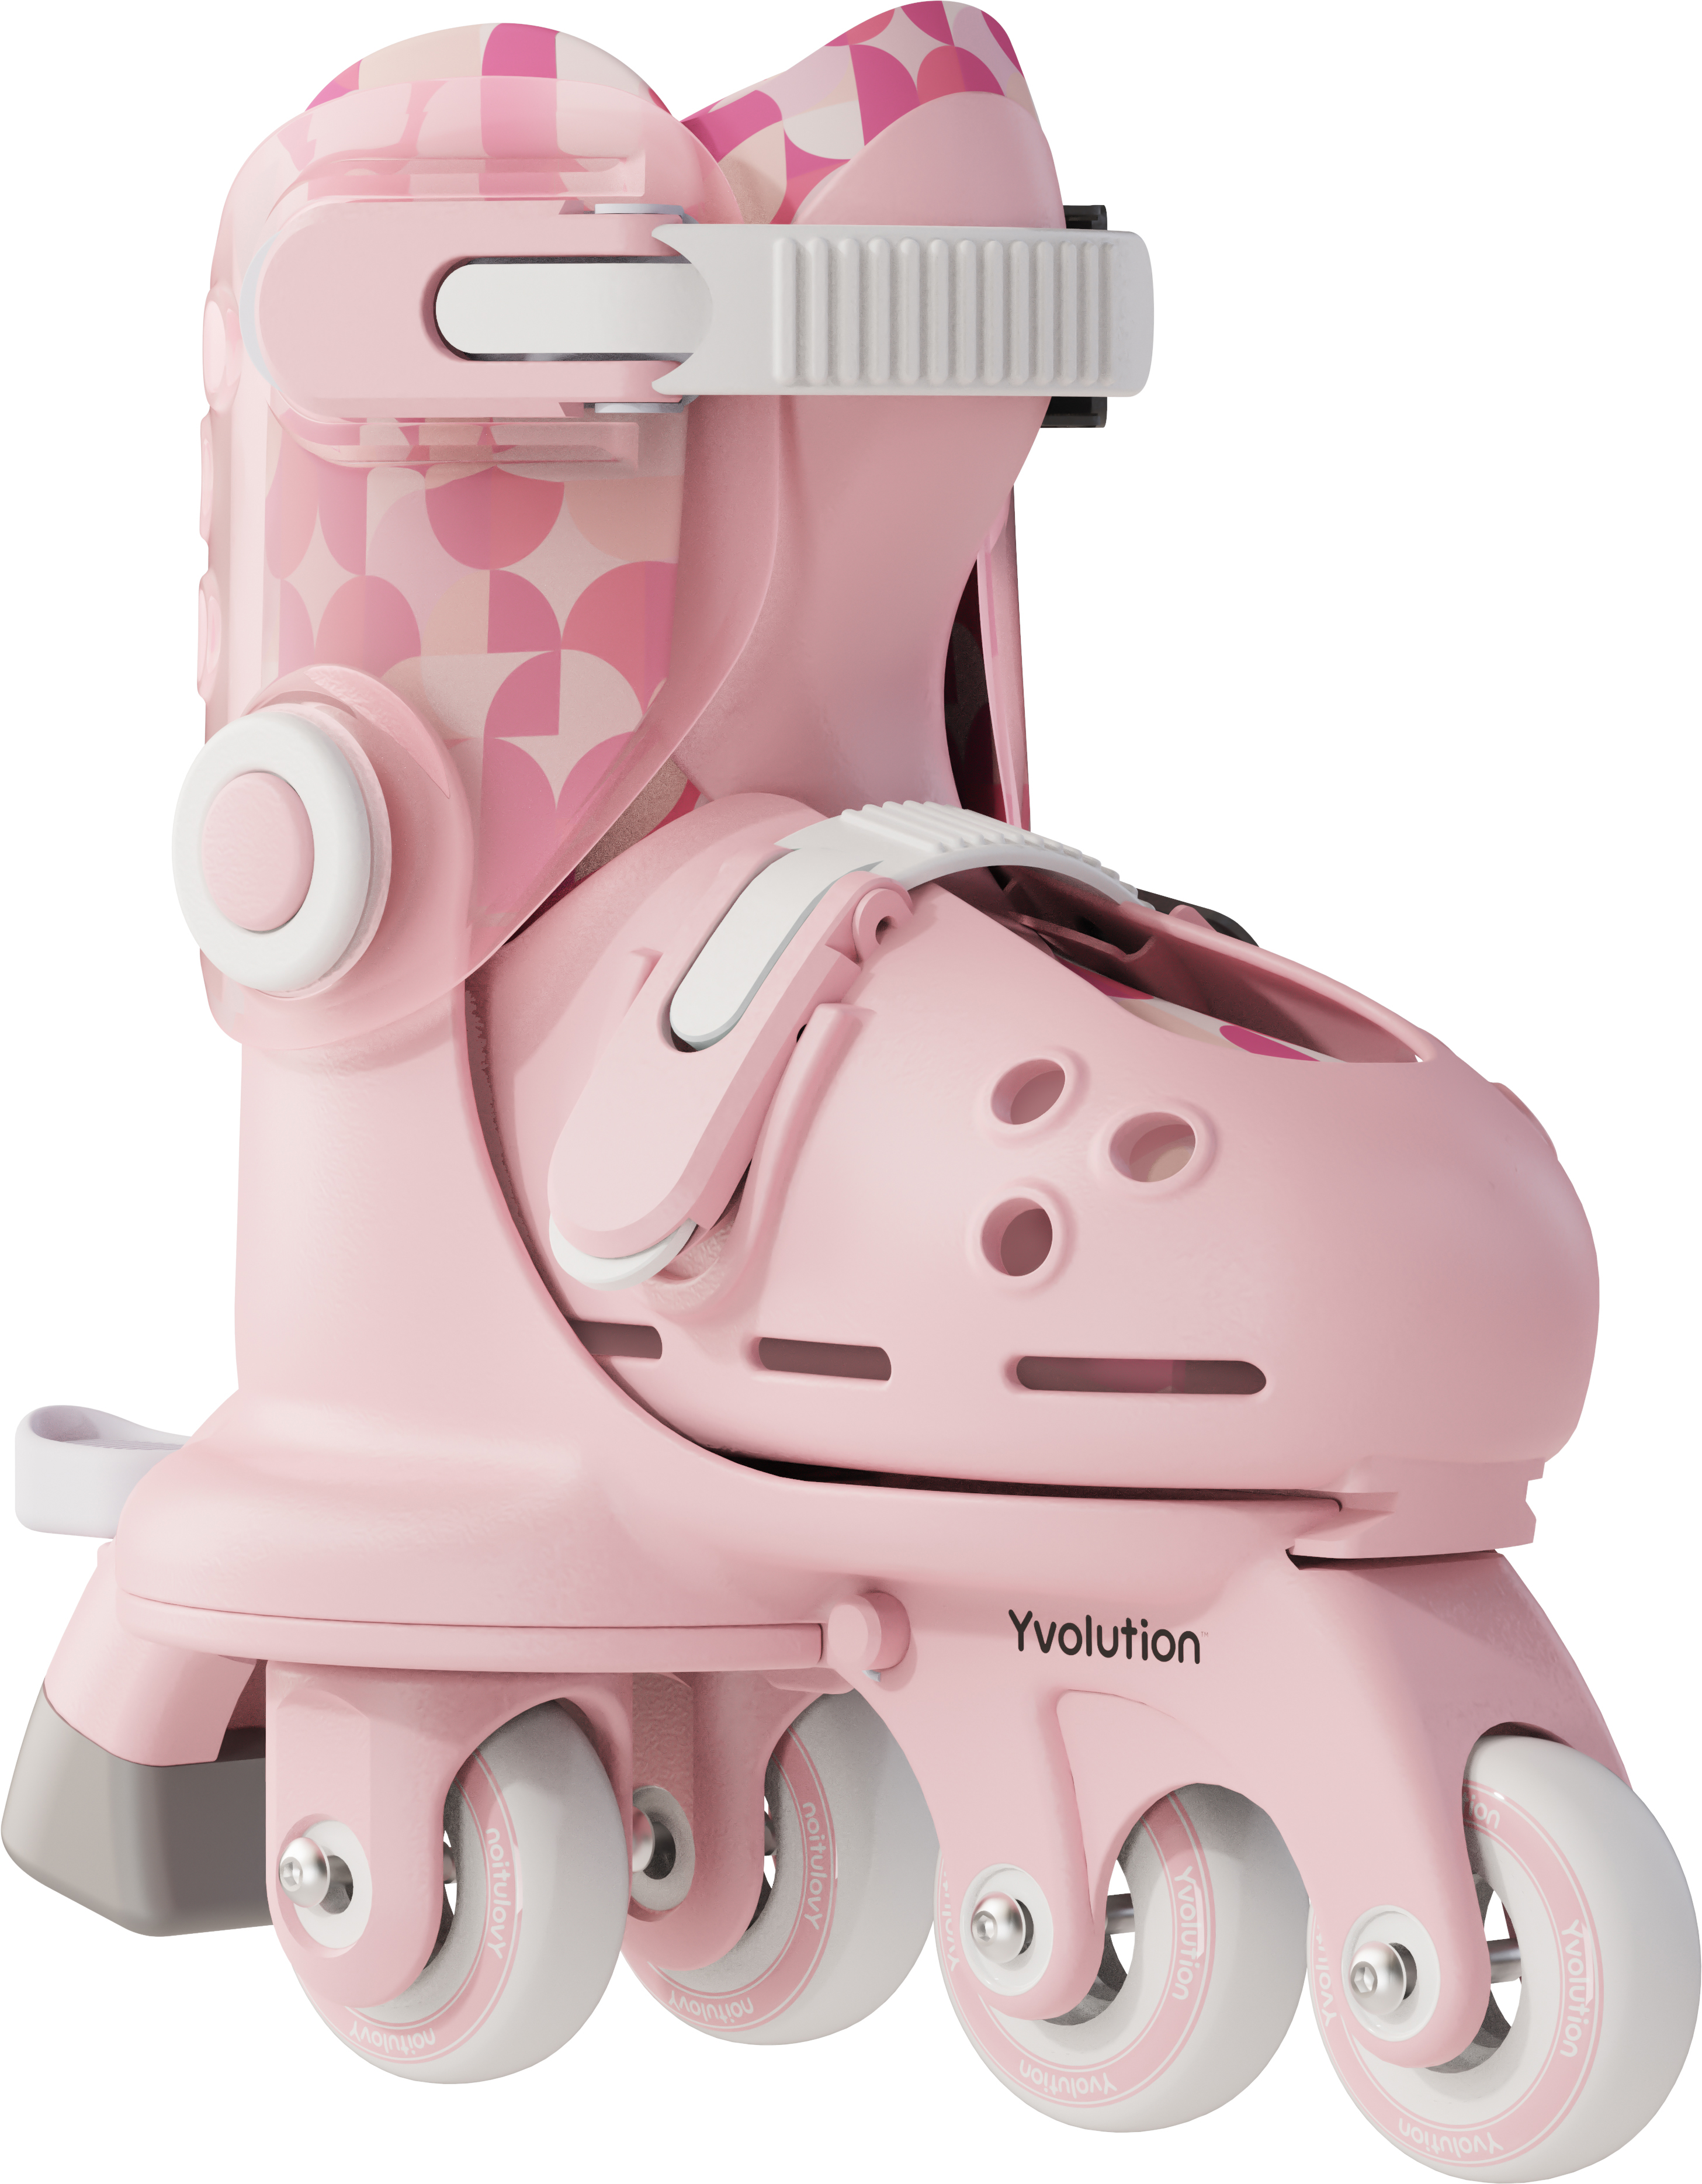 Роликовые коньки Yvolution Twista, размер 30-34, розовый фото 2